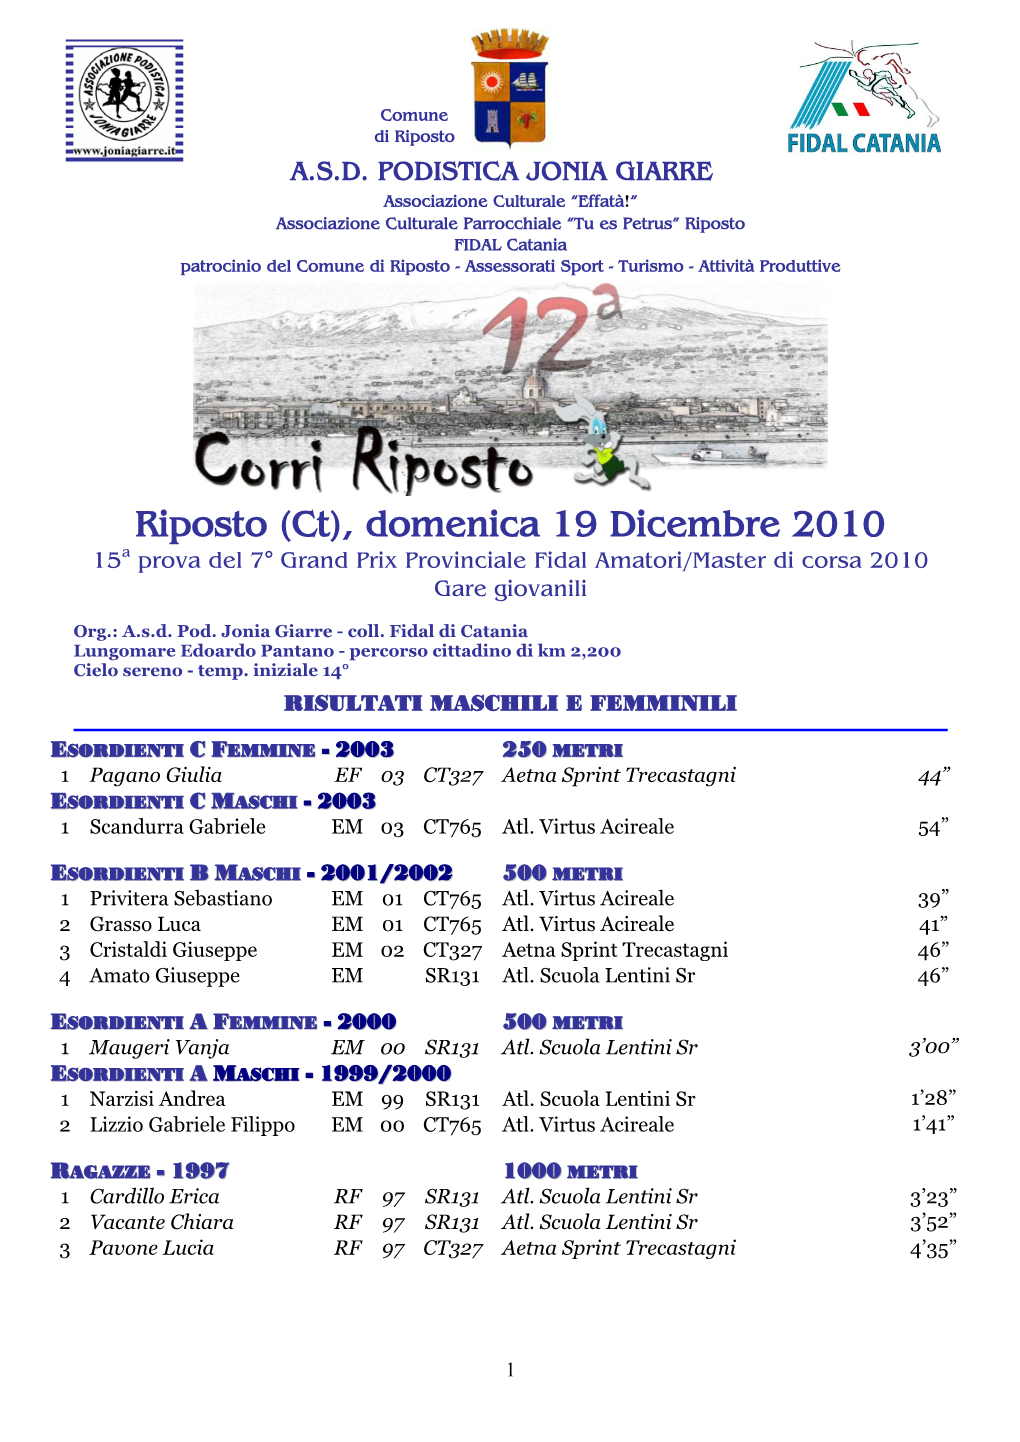 Riposto (Ct), Domenica 19 Dicembre 2010 15A Prova Del 7° Grand Prix Provinciale Fidal Amatori/Master Di Corsa 2010 Gare Giovanili